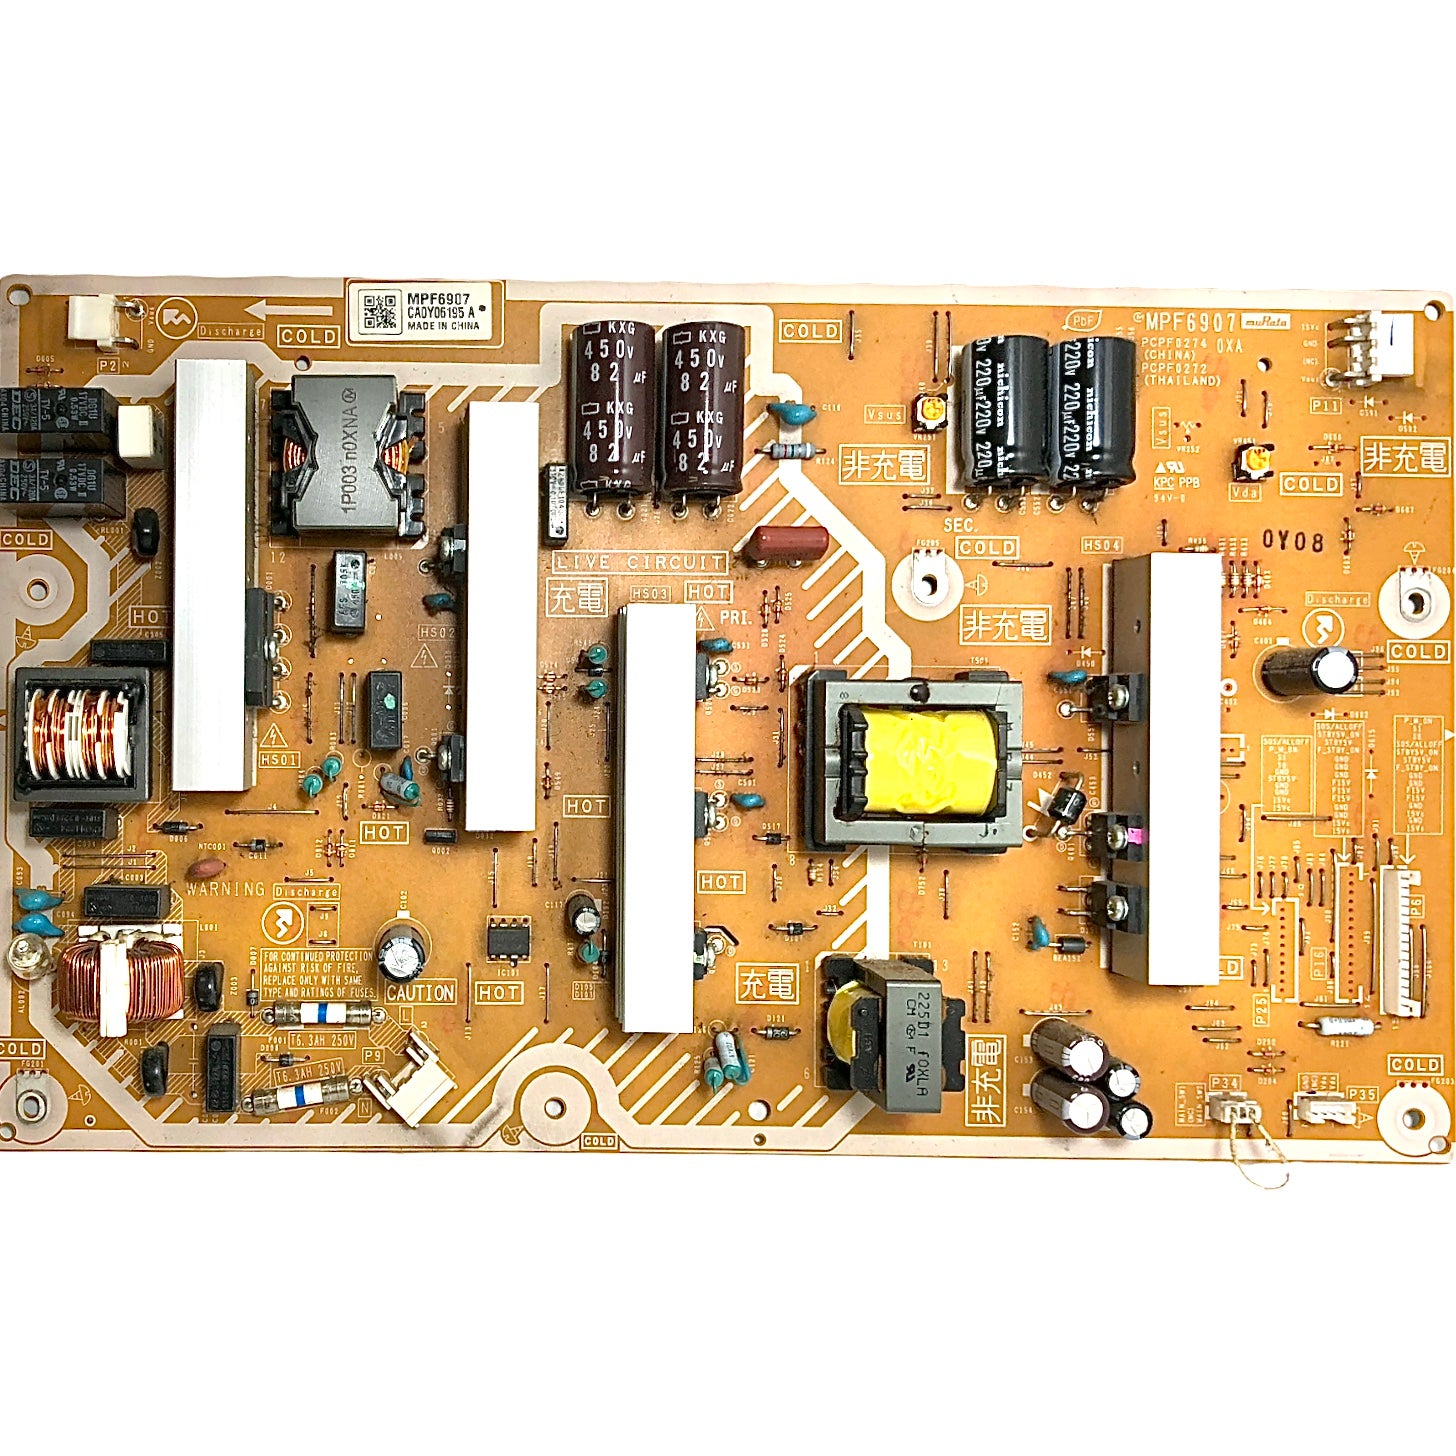 Panasonic N0AE5JK00006 (MPF6907, PCPF0274, PCPF0272) Power Supply